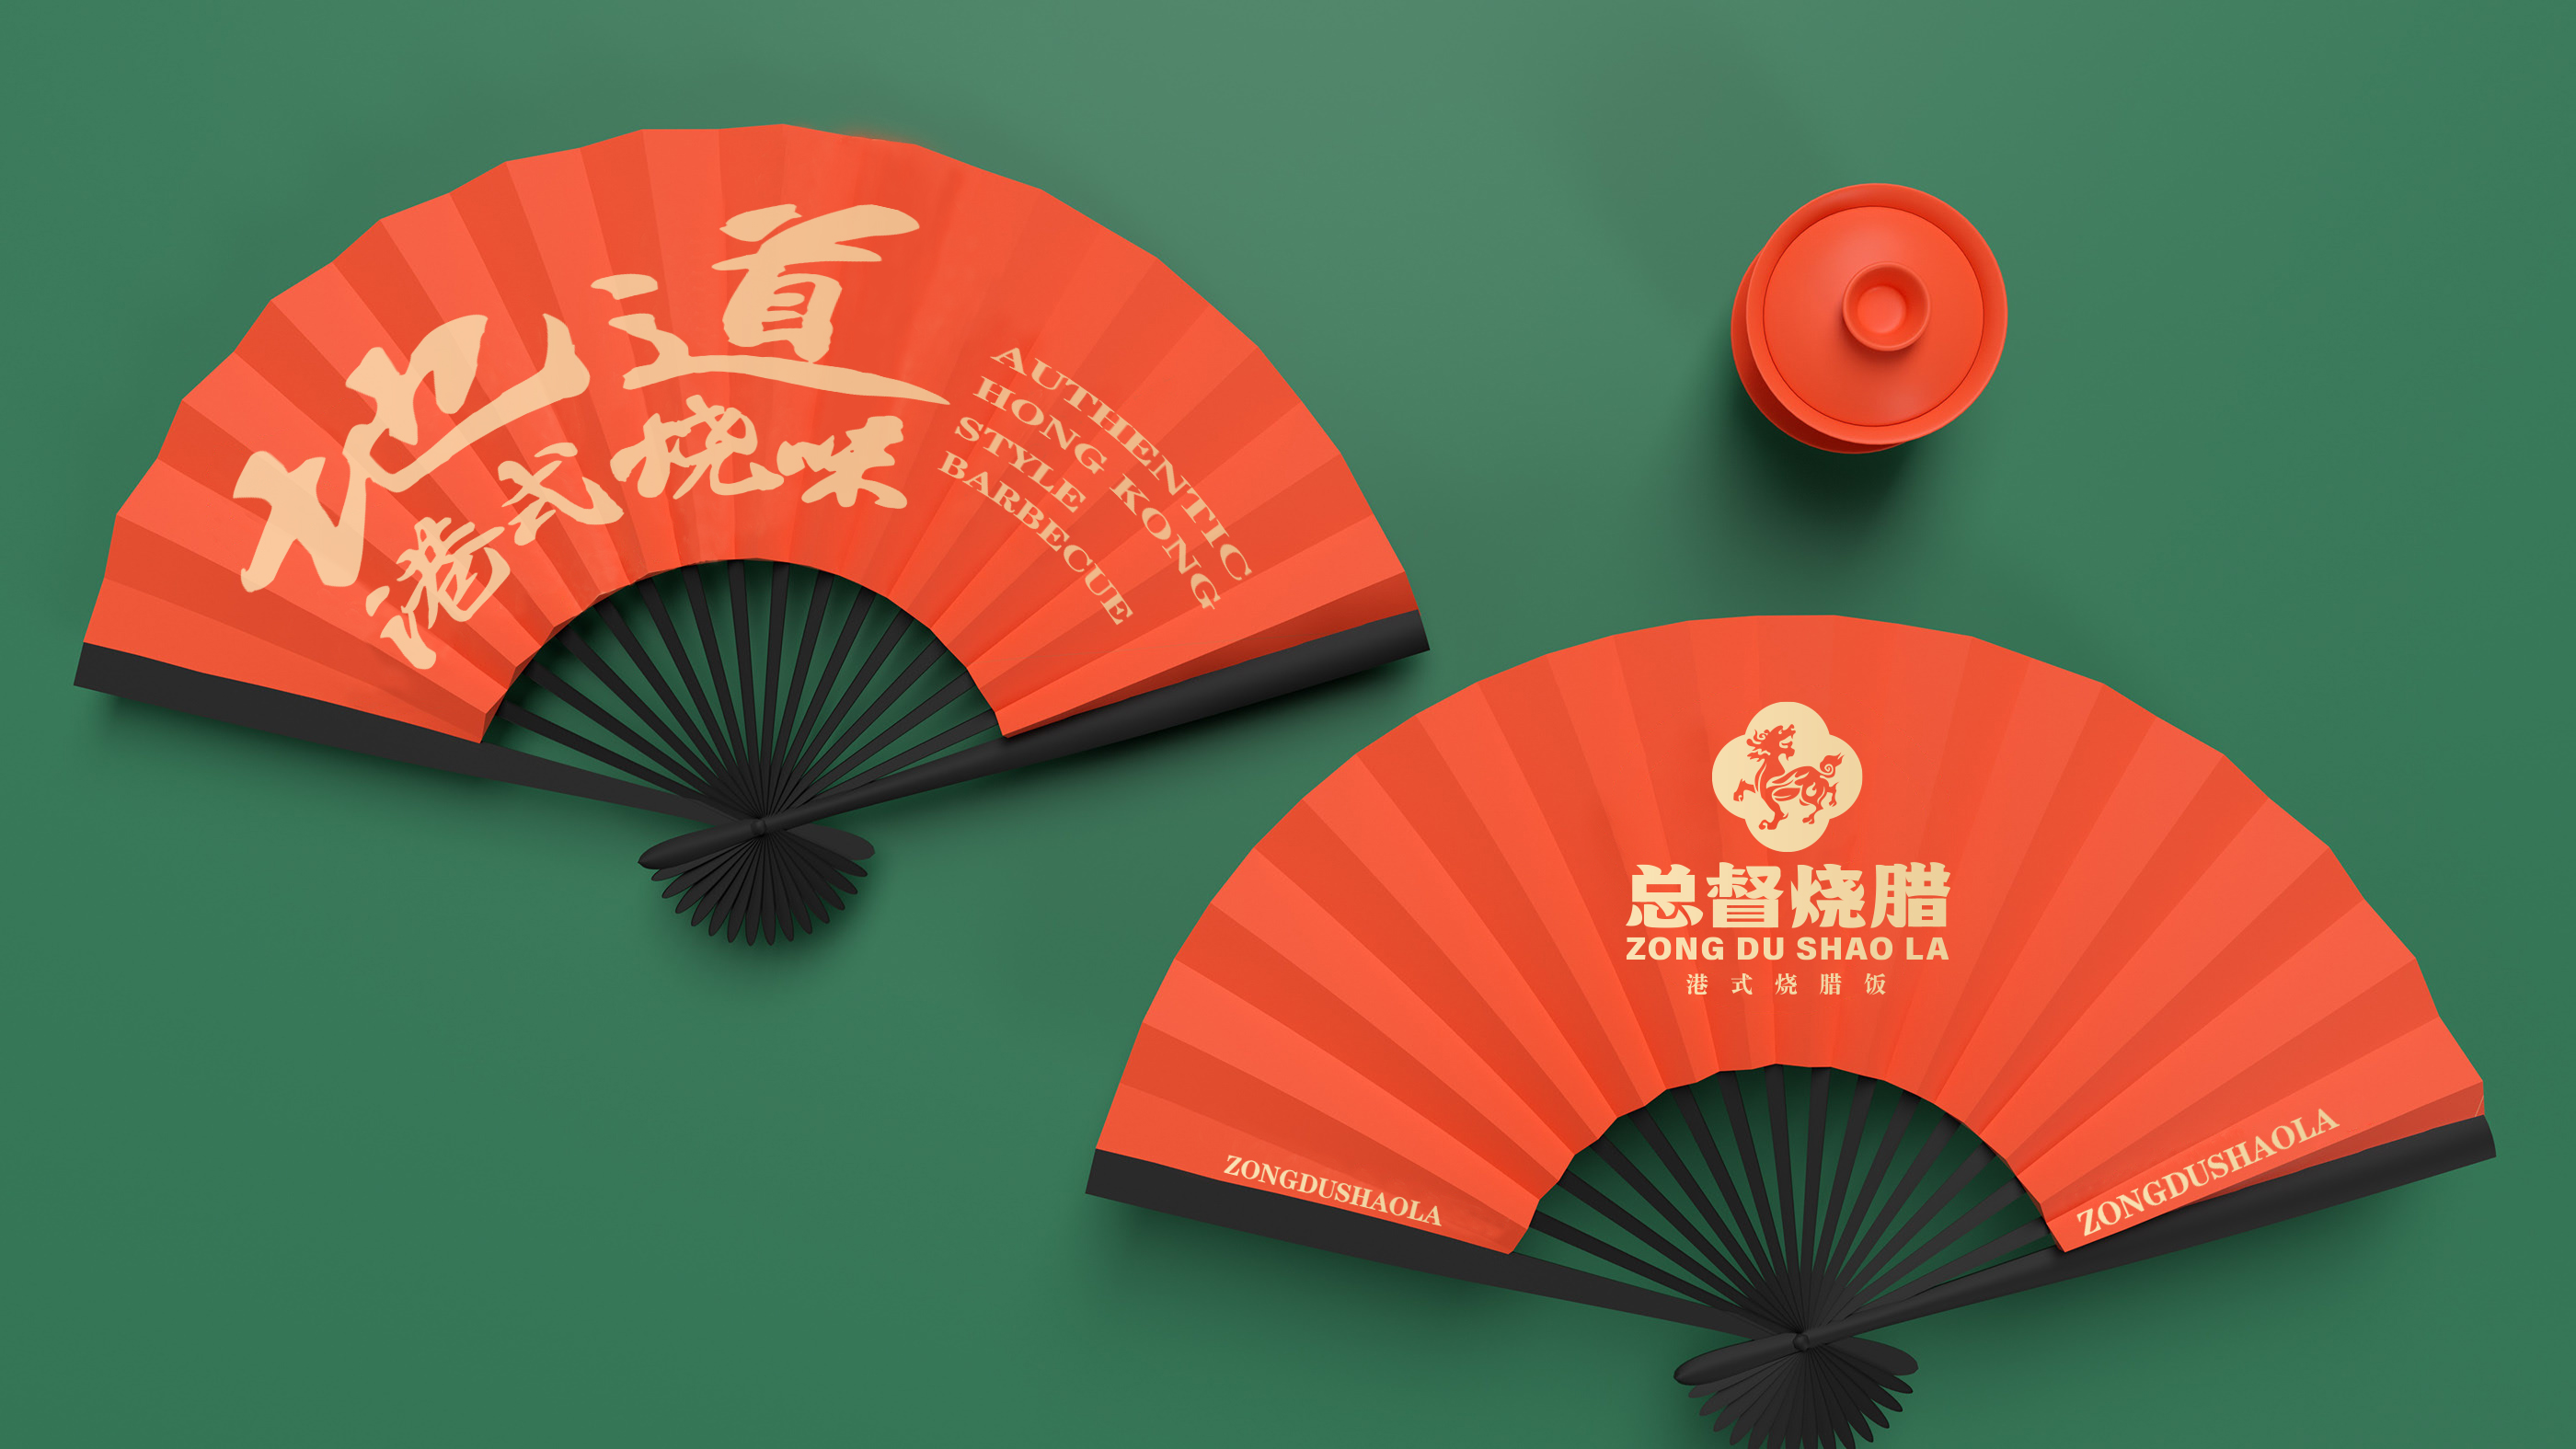 总督烧腊餐饮品牌logo设计港式烧腊广东风味餐饮案例